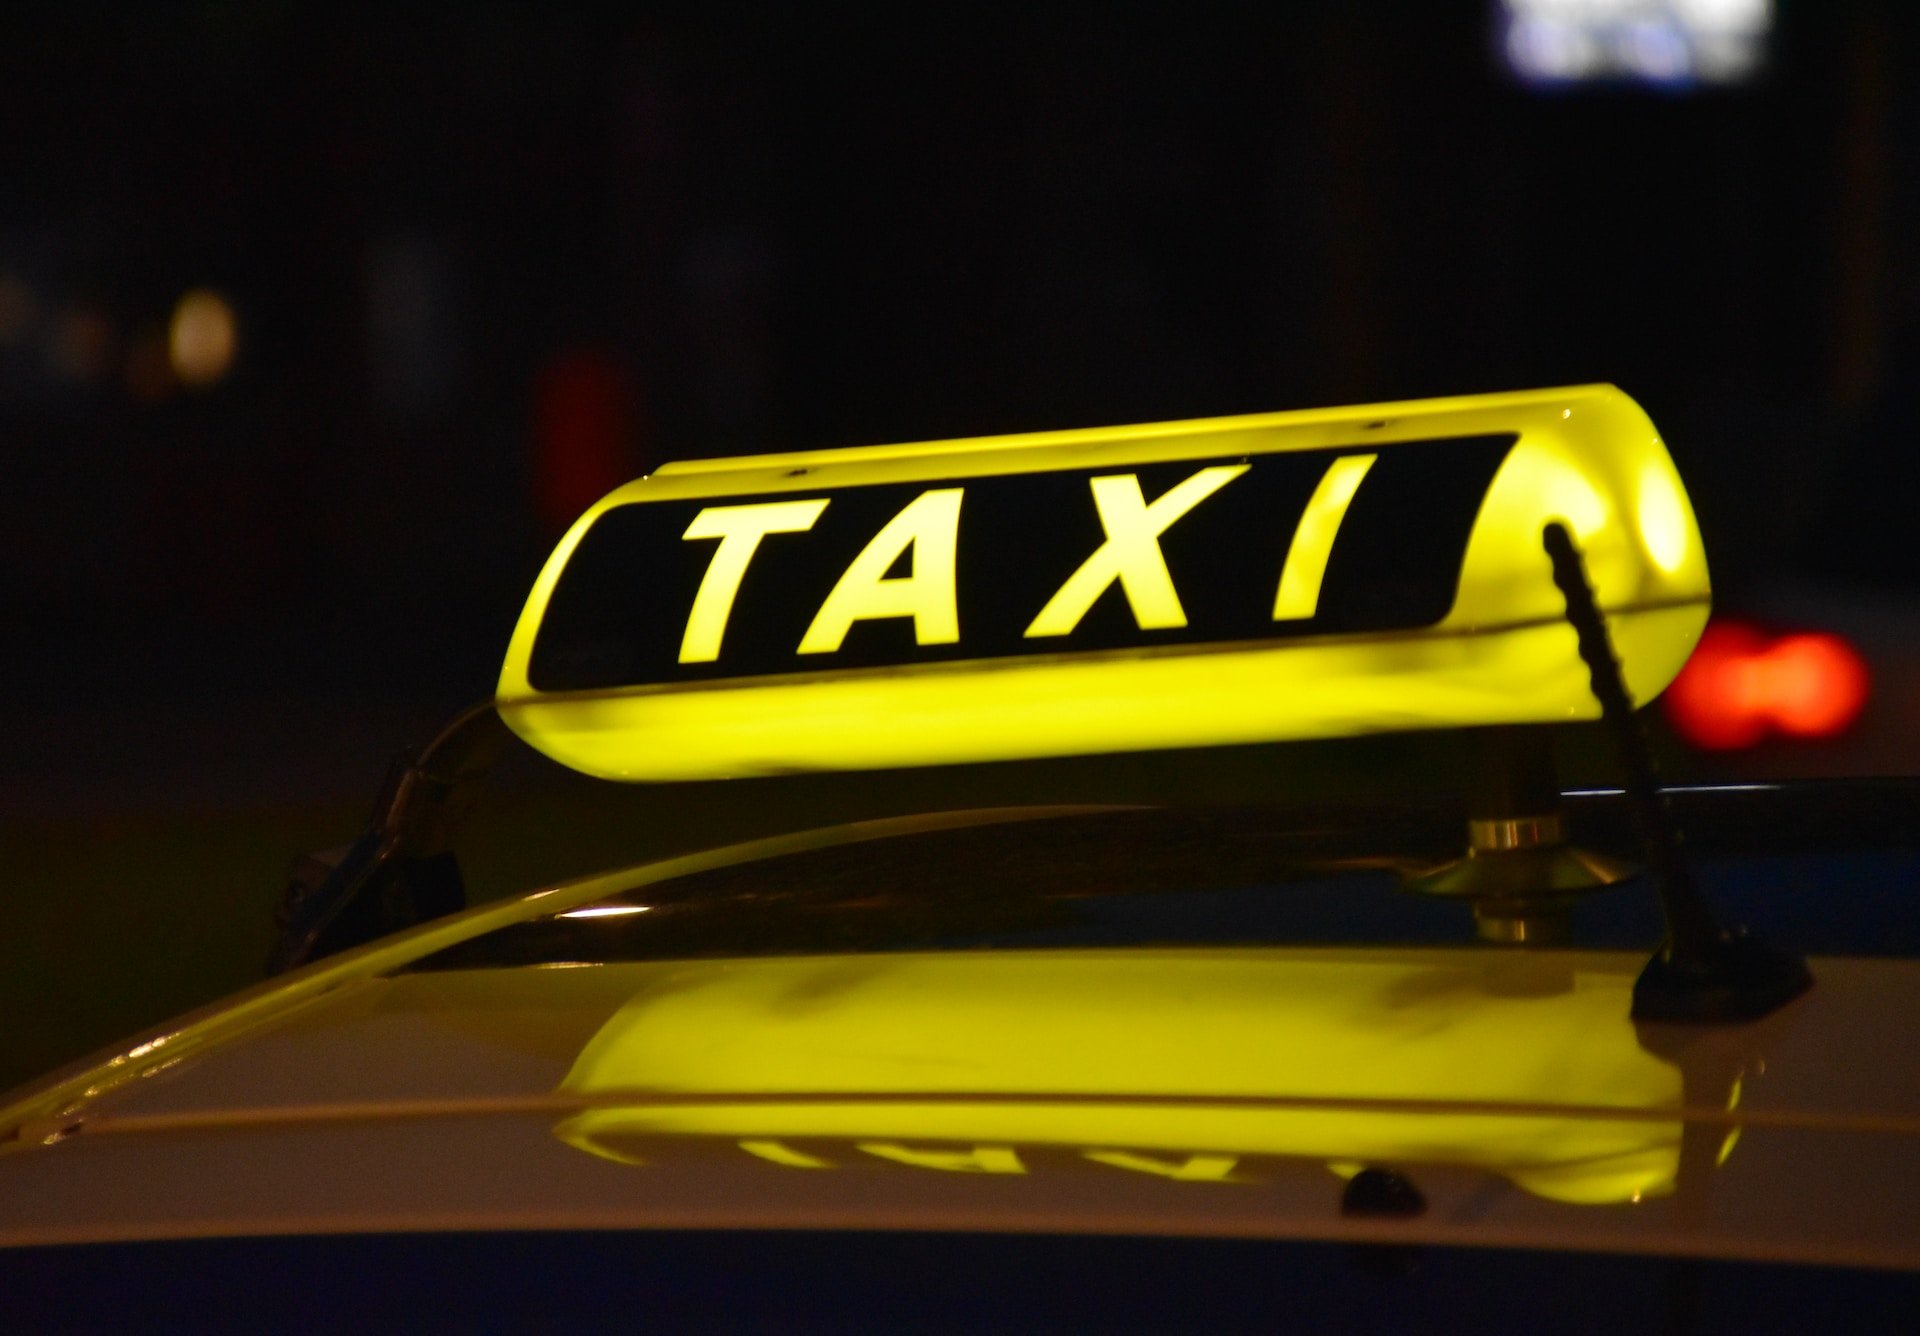 Цены на услуги такси в Удмуртии выросли на 23%